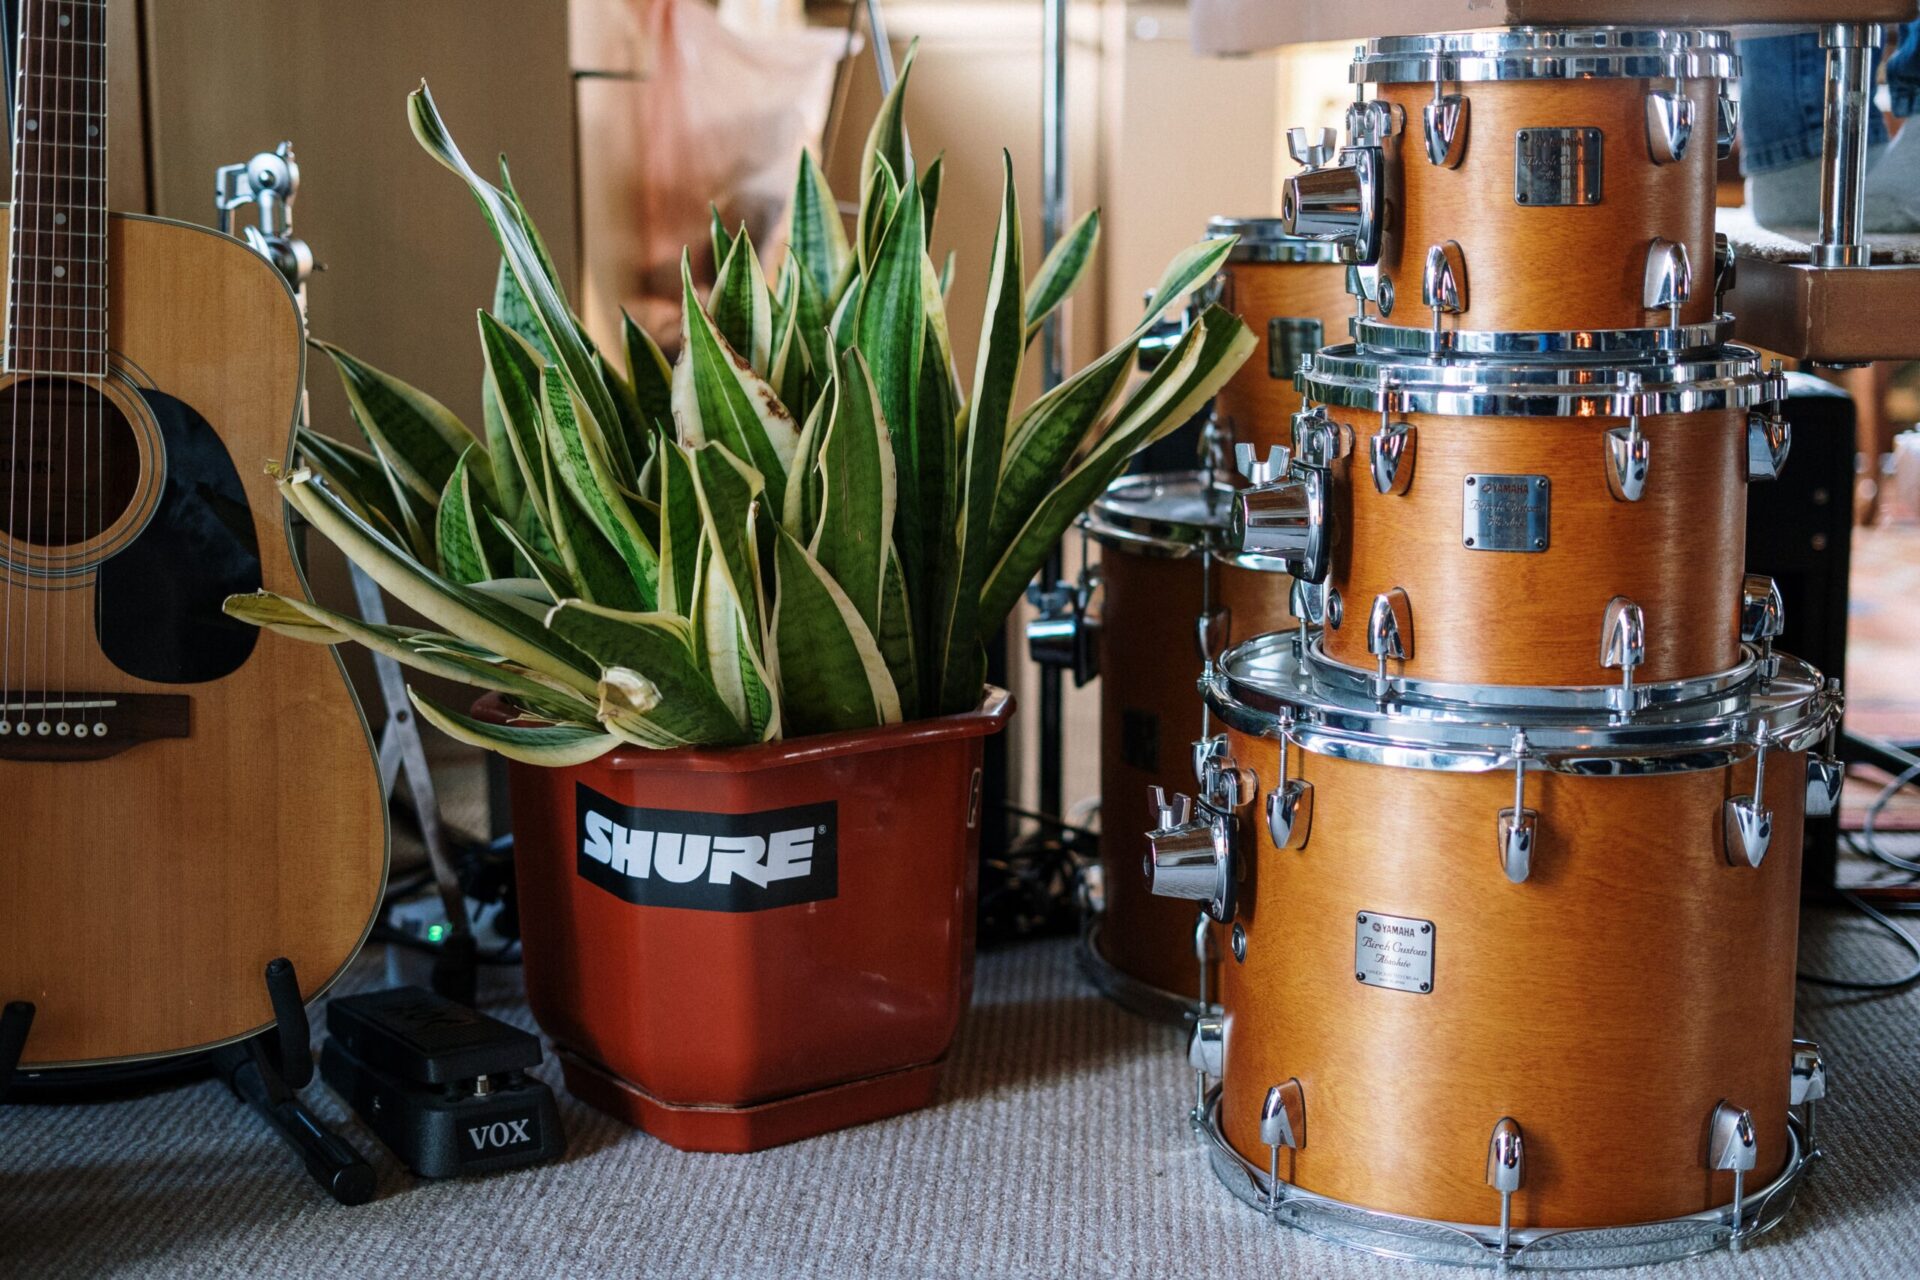 Des instruments (guitare, batterie) sont posés par terre dans un appartement.